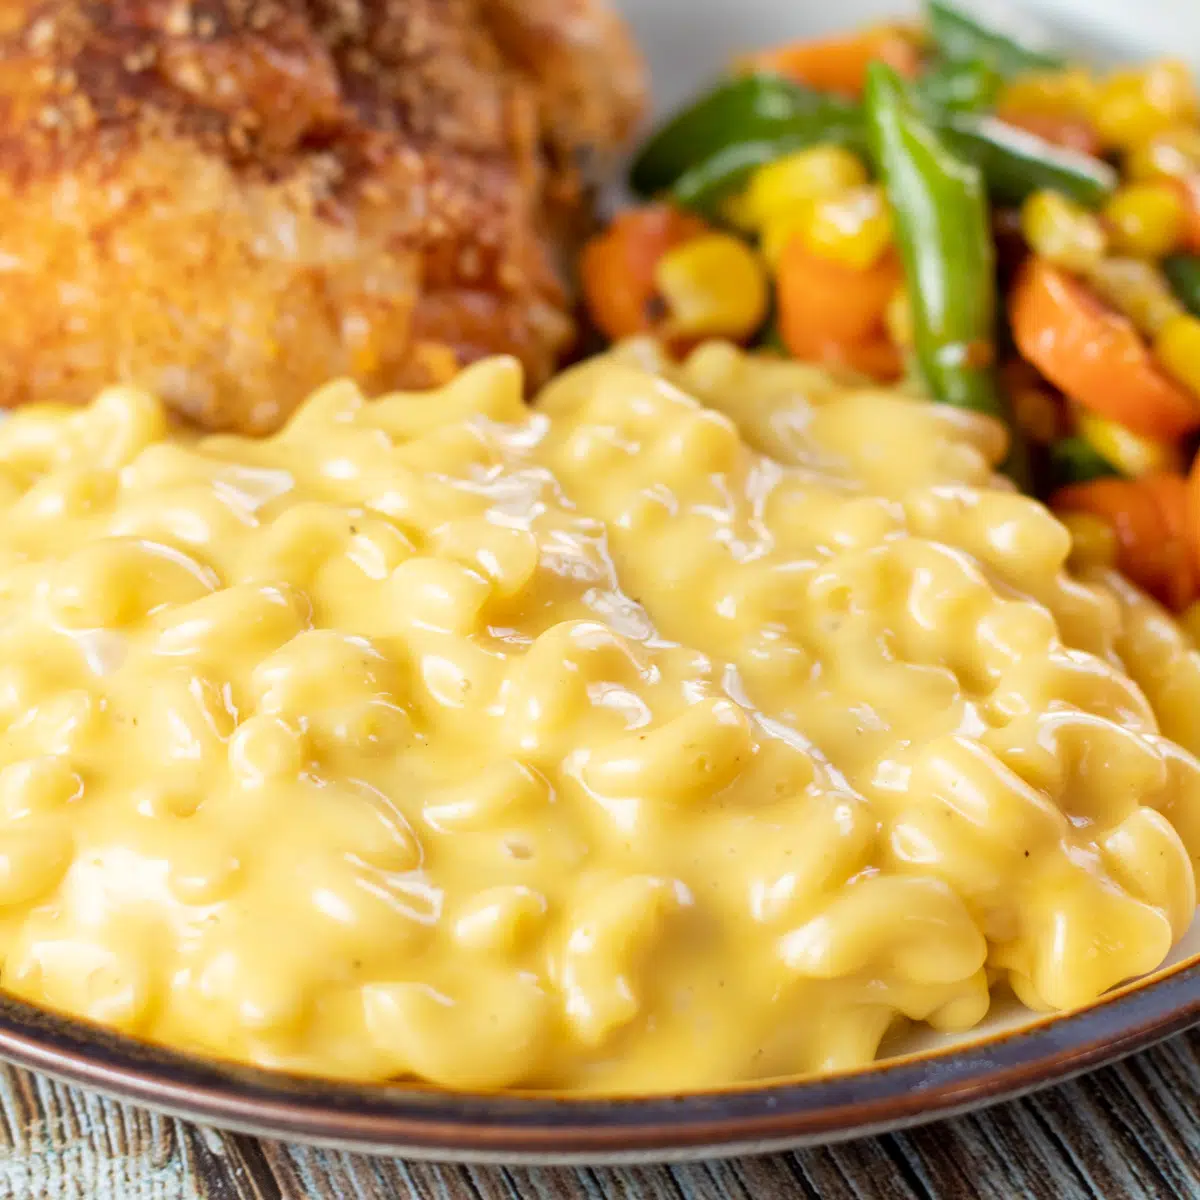 Vierkante afbeelding met velveeta mac & cheese op een bord met kip en groenten.